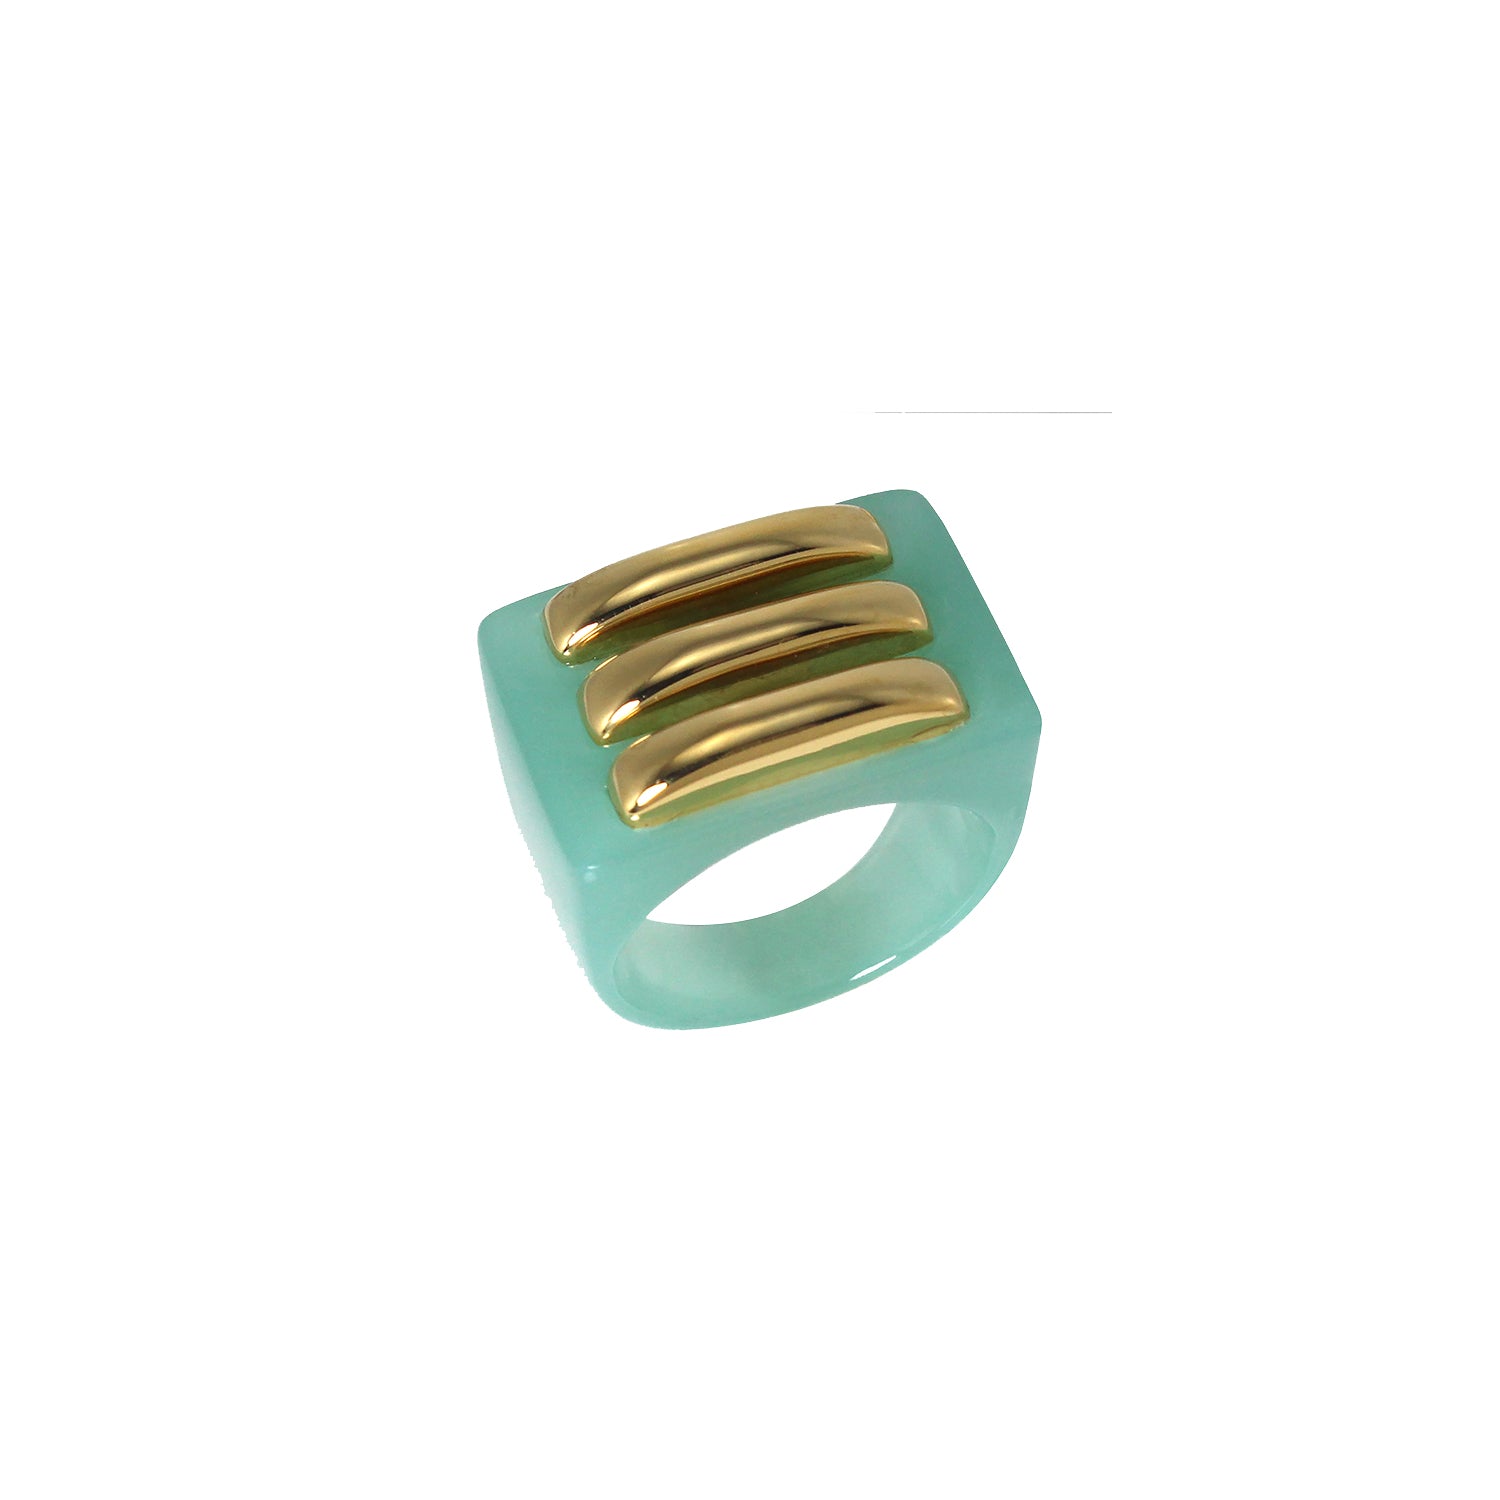 Large Resin Ring - Gold Bars - Light Blue / Green